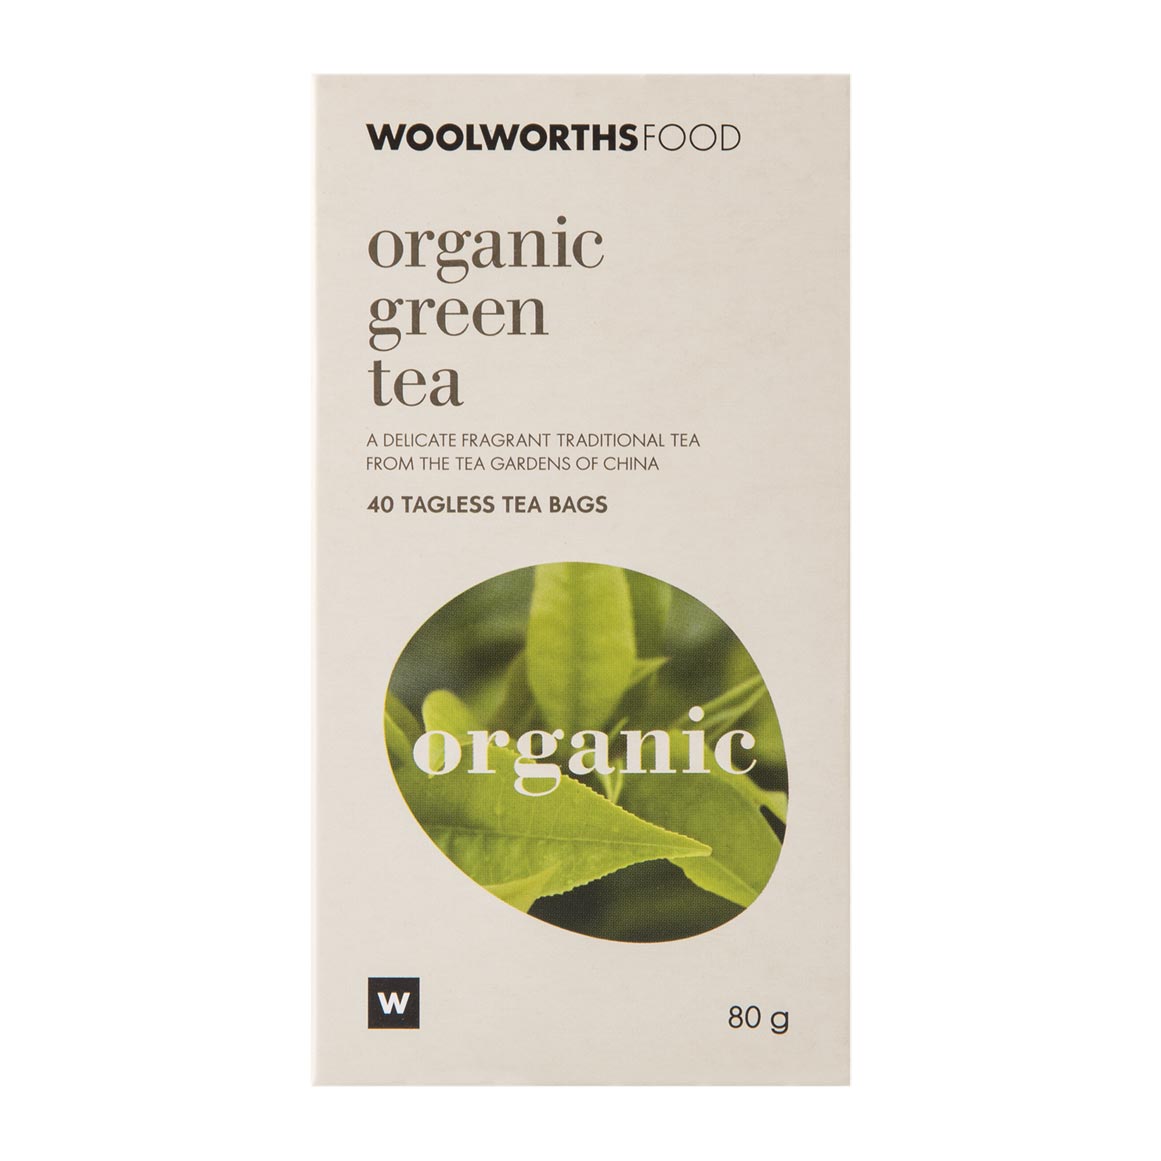 Organic Green Tea 40 Pk 6009171041380 ?V=8xSo&o=eyJidWNrZXQiOiJ3dy1vbmxpbmUtaW1hZ2UtcmVzaXplIiwia2V5IjoiaW1hZ2VzL2VsYXN0aWNlcmEvcHJvZHVjdHMvaGVyby8yMDE4LTA3LTEzLzYwMDkxNzEwNDEzODBfaGVyby5qcGcifQ&